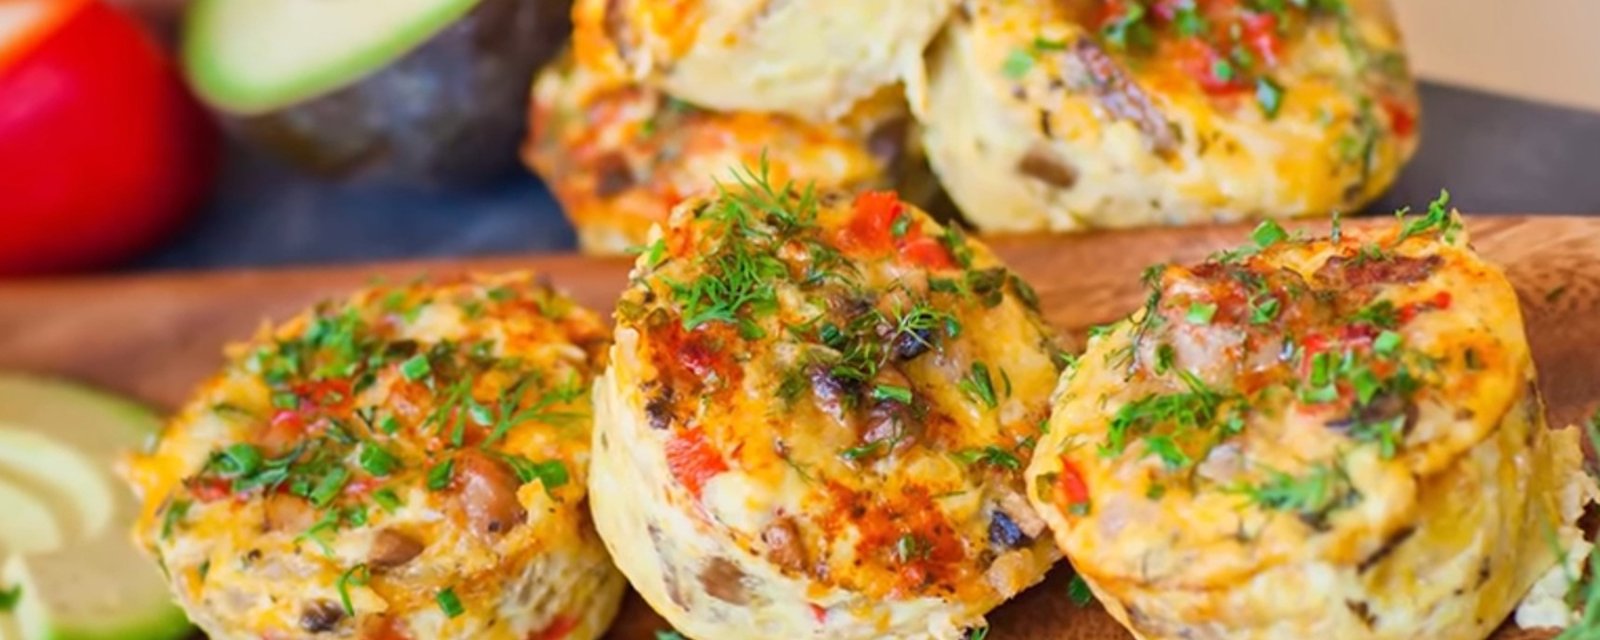 Ces délicieuses omelettes à la saucisse sur un nid de pommes de terre sont à tomber!